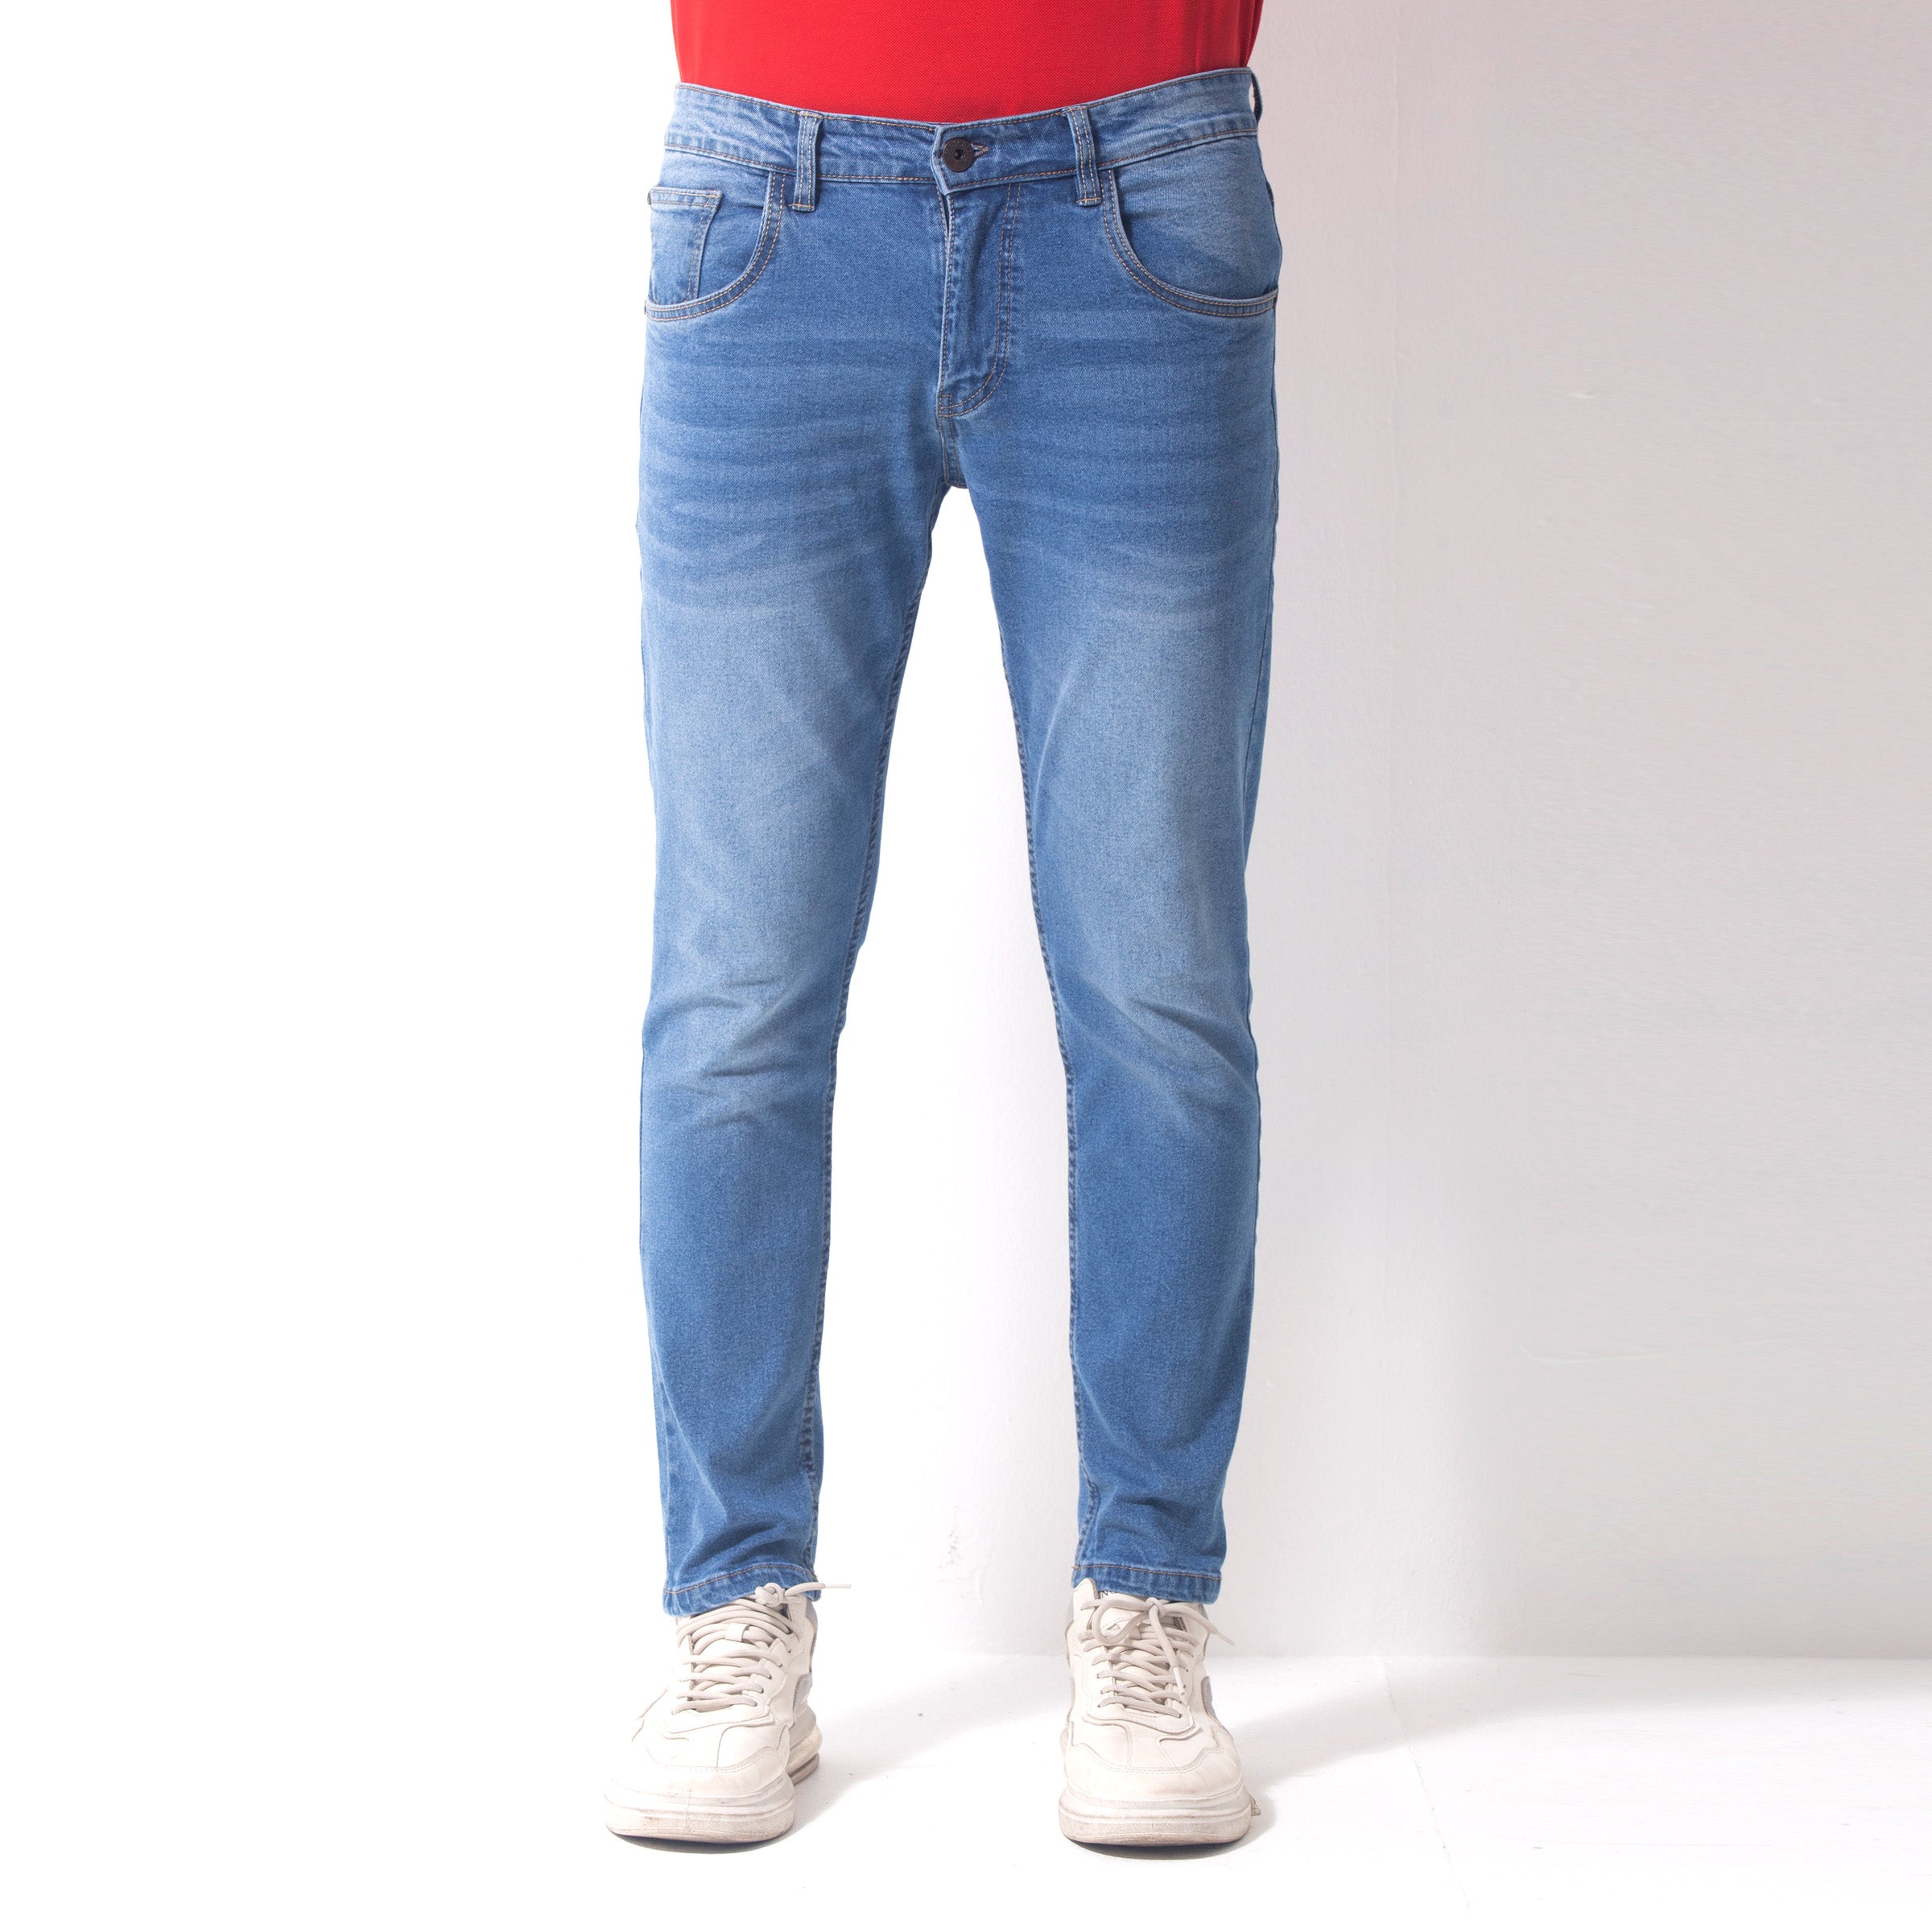 Stretchable Vintage Jeans Pant - Mid blue